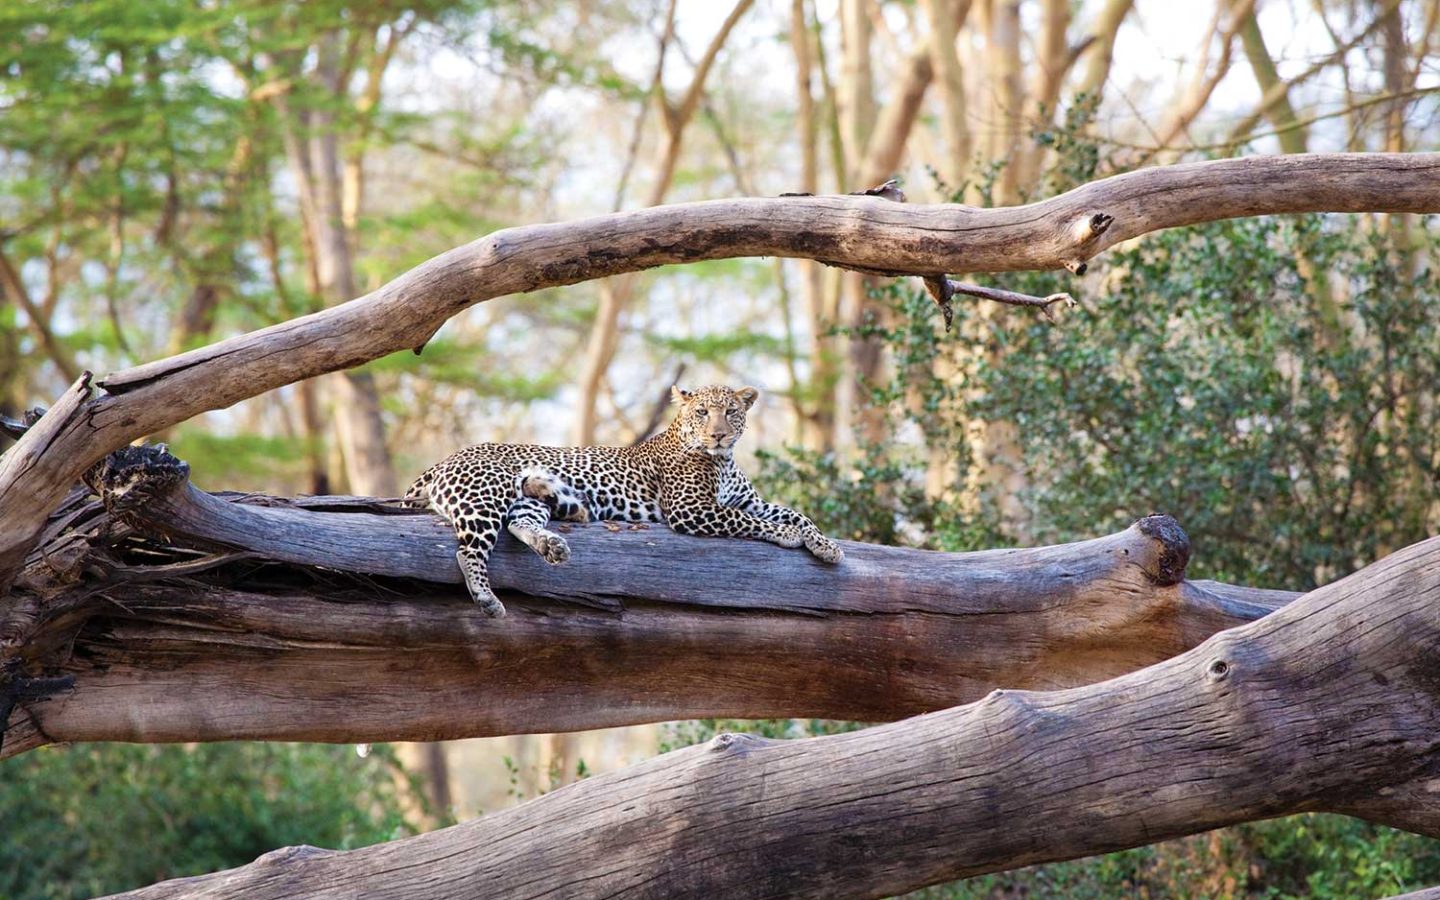 leopard on fallen tree trunks